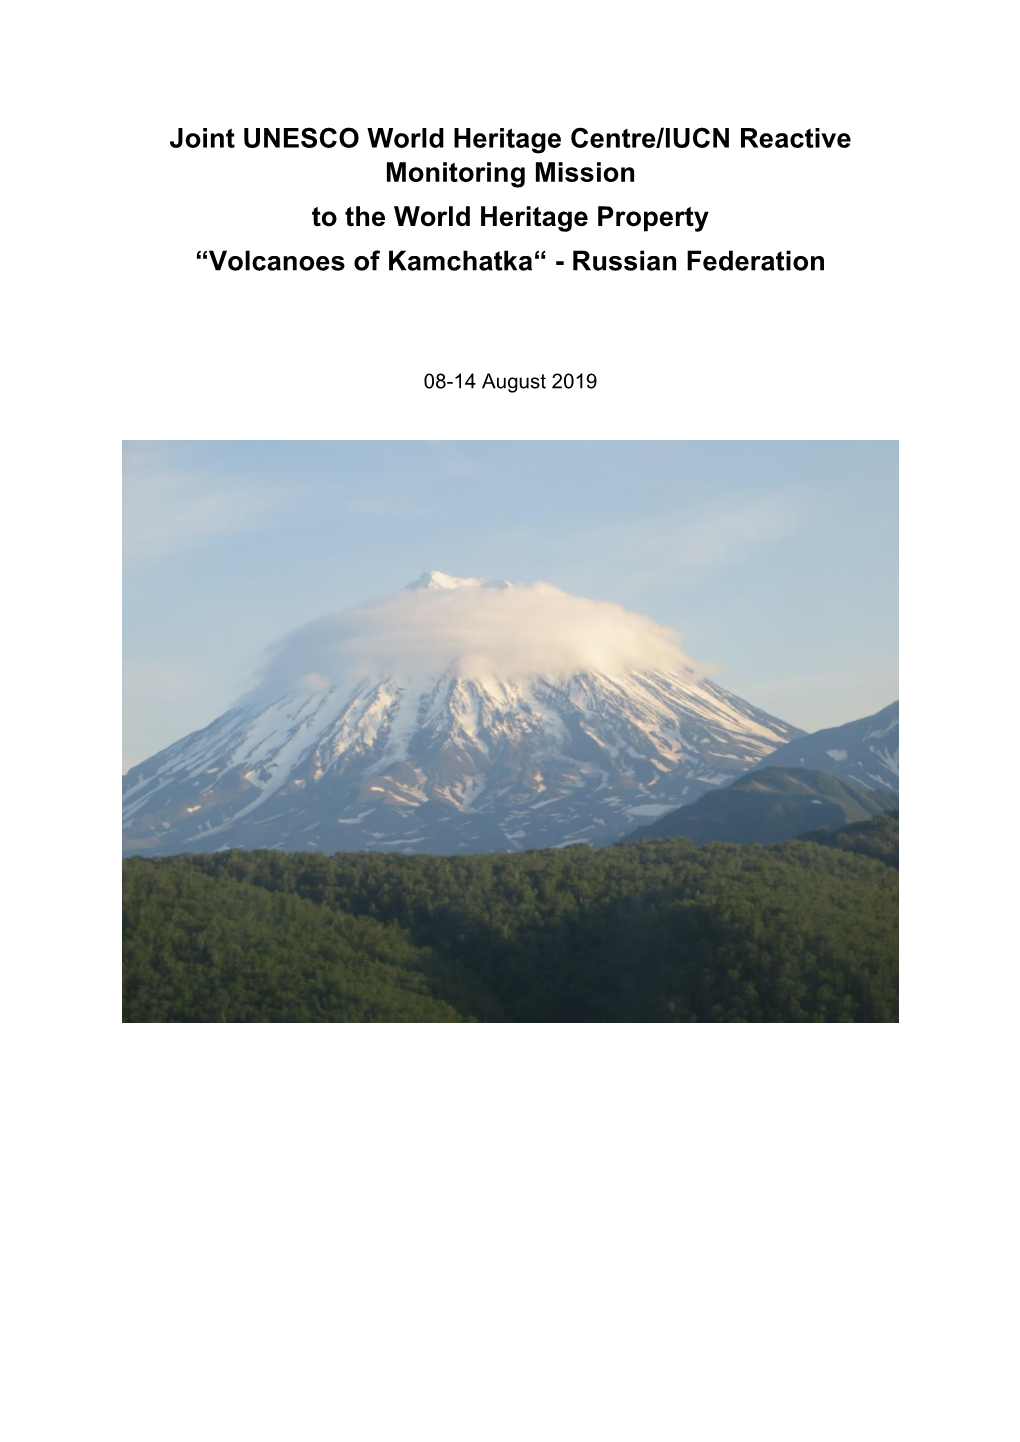 “Volcanoes of Kamchatka“ - Russian Federation